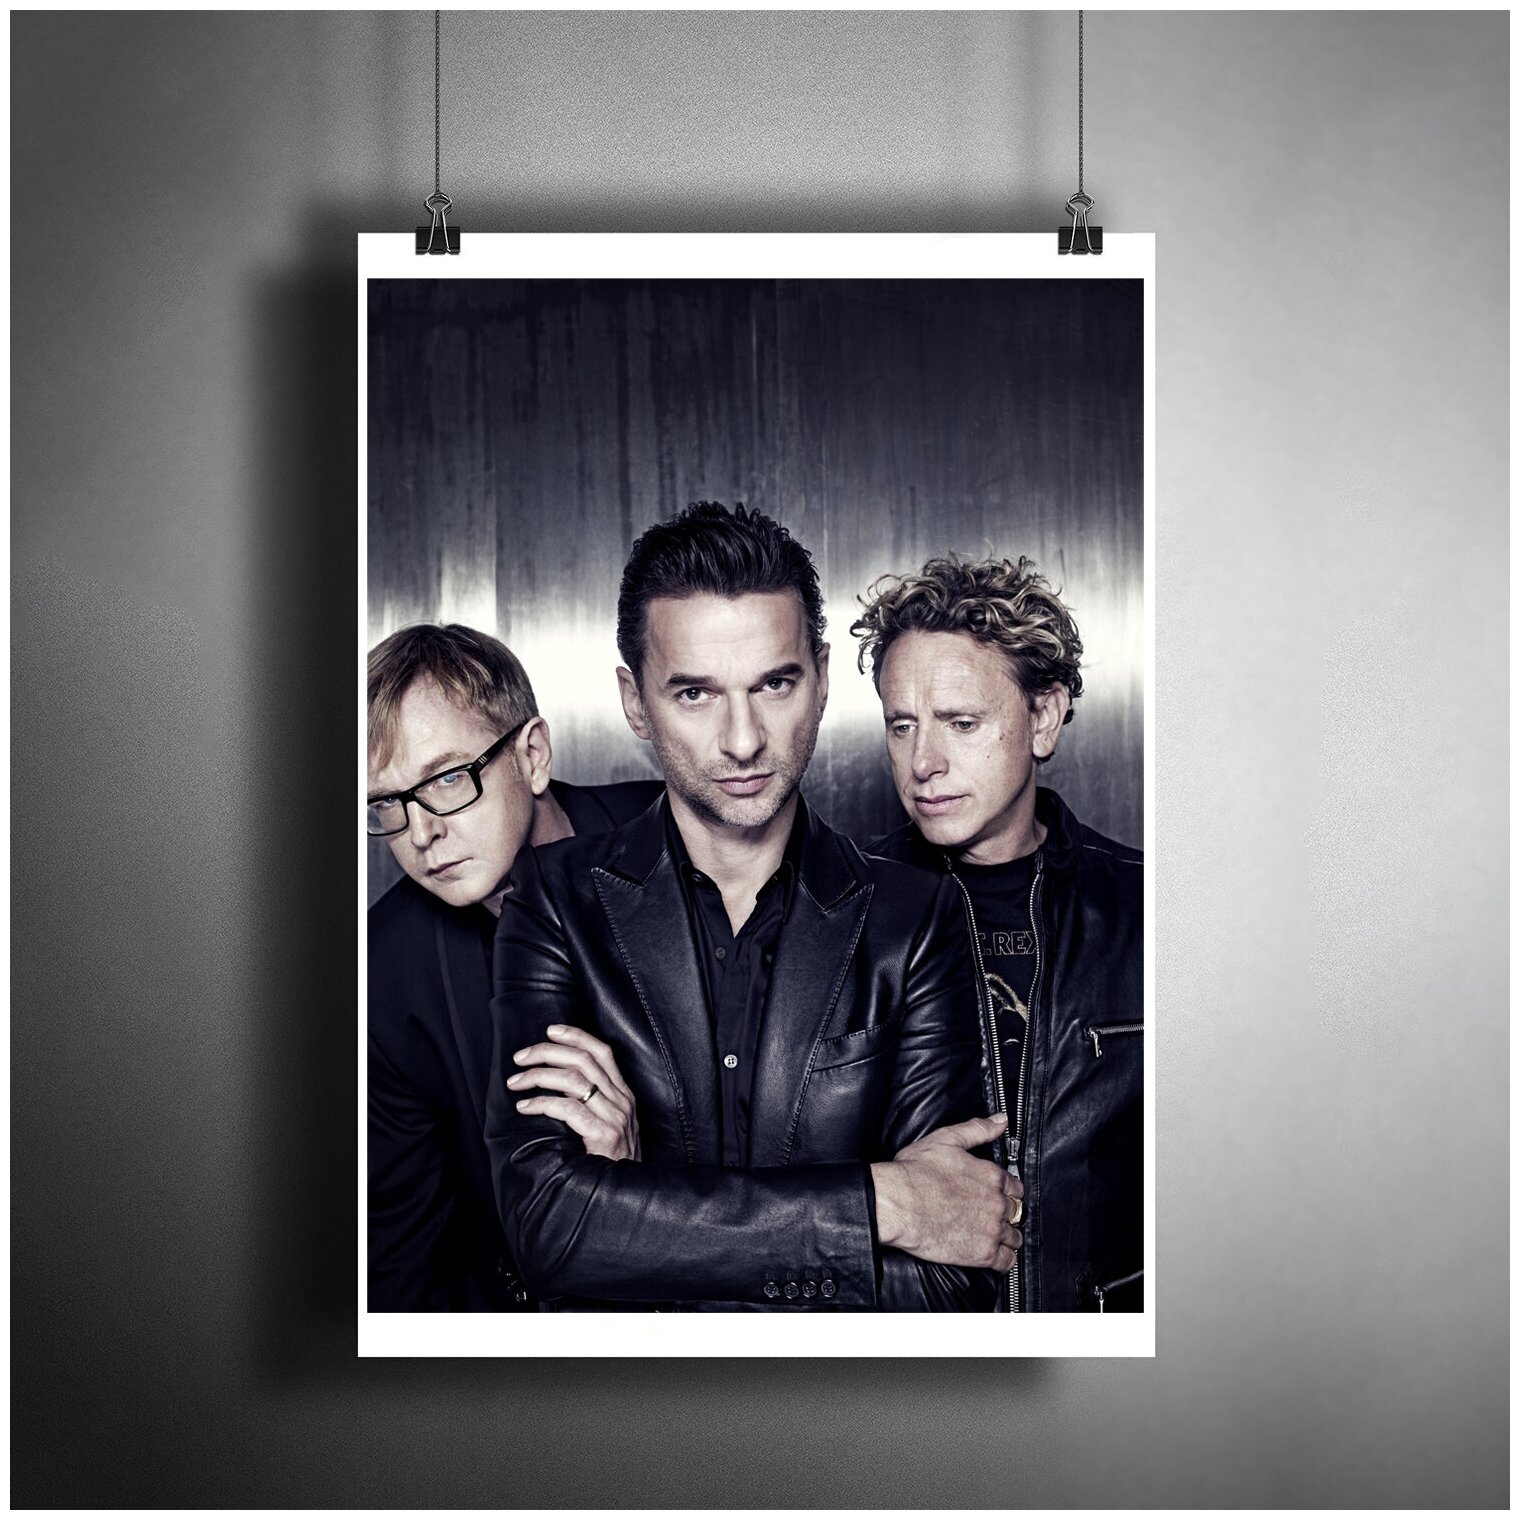 Постер плакат для интерьера "Музыка: Британская электроник-рок-группа Депеш Мод. Группа Depeche Mode"/ Декор дома, офиса, комнаты A3 (297 x 420 мм)